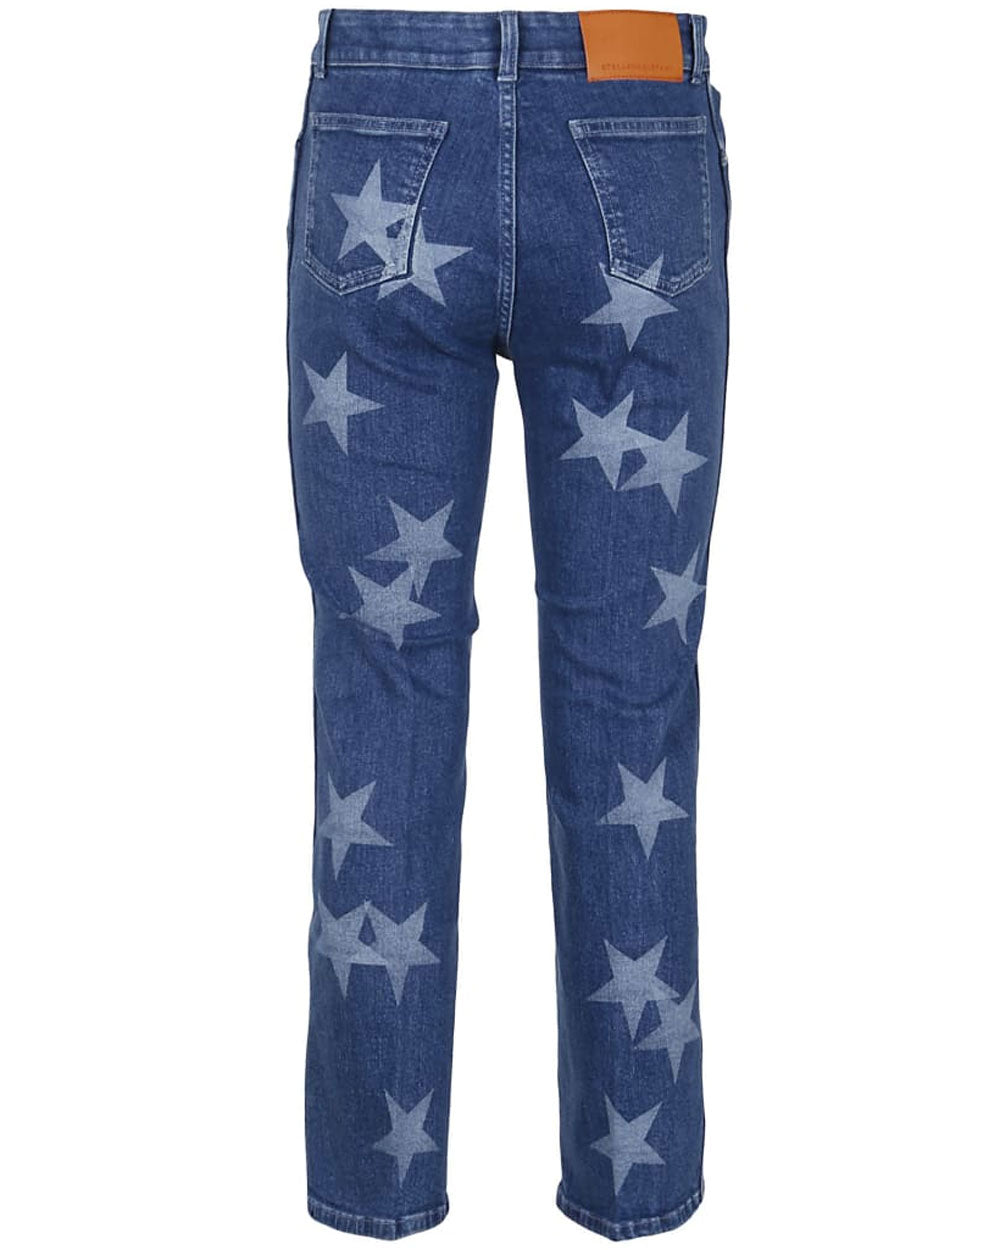 Medium Blue Star Jean